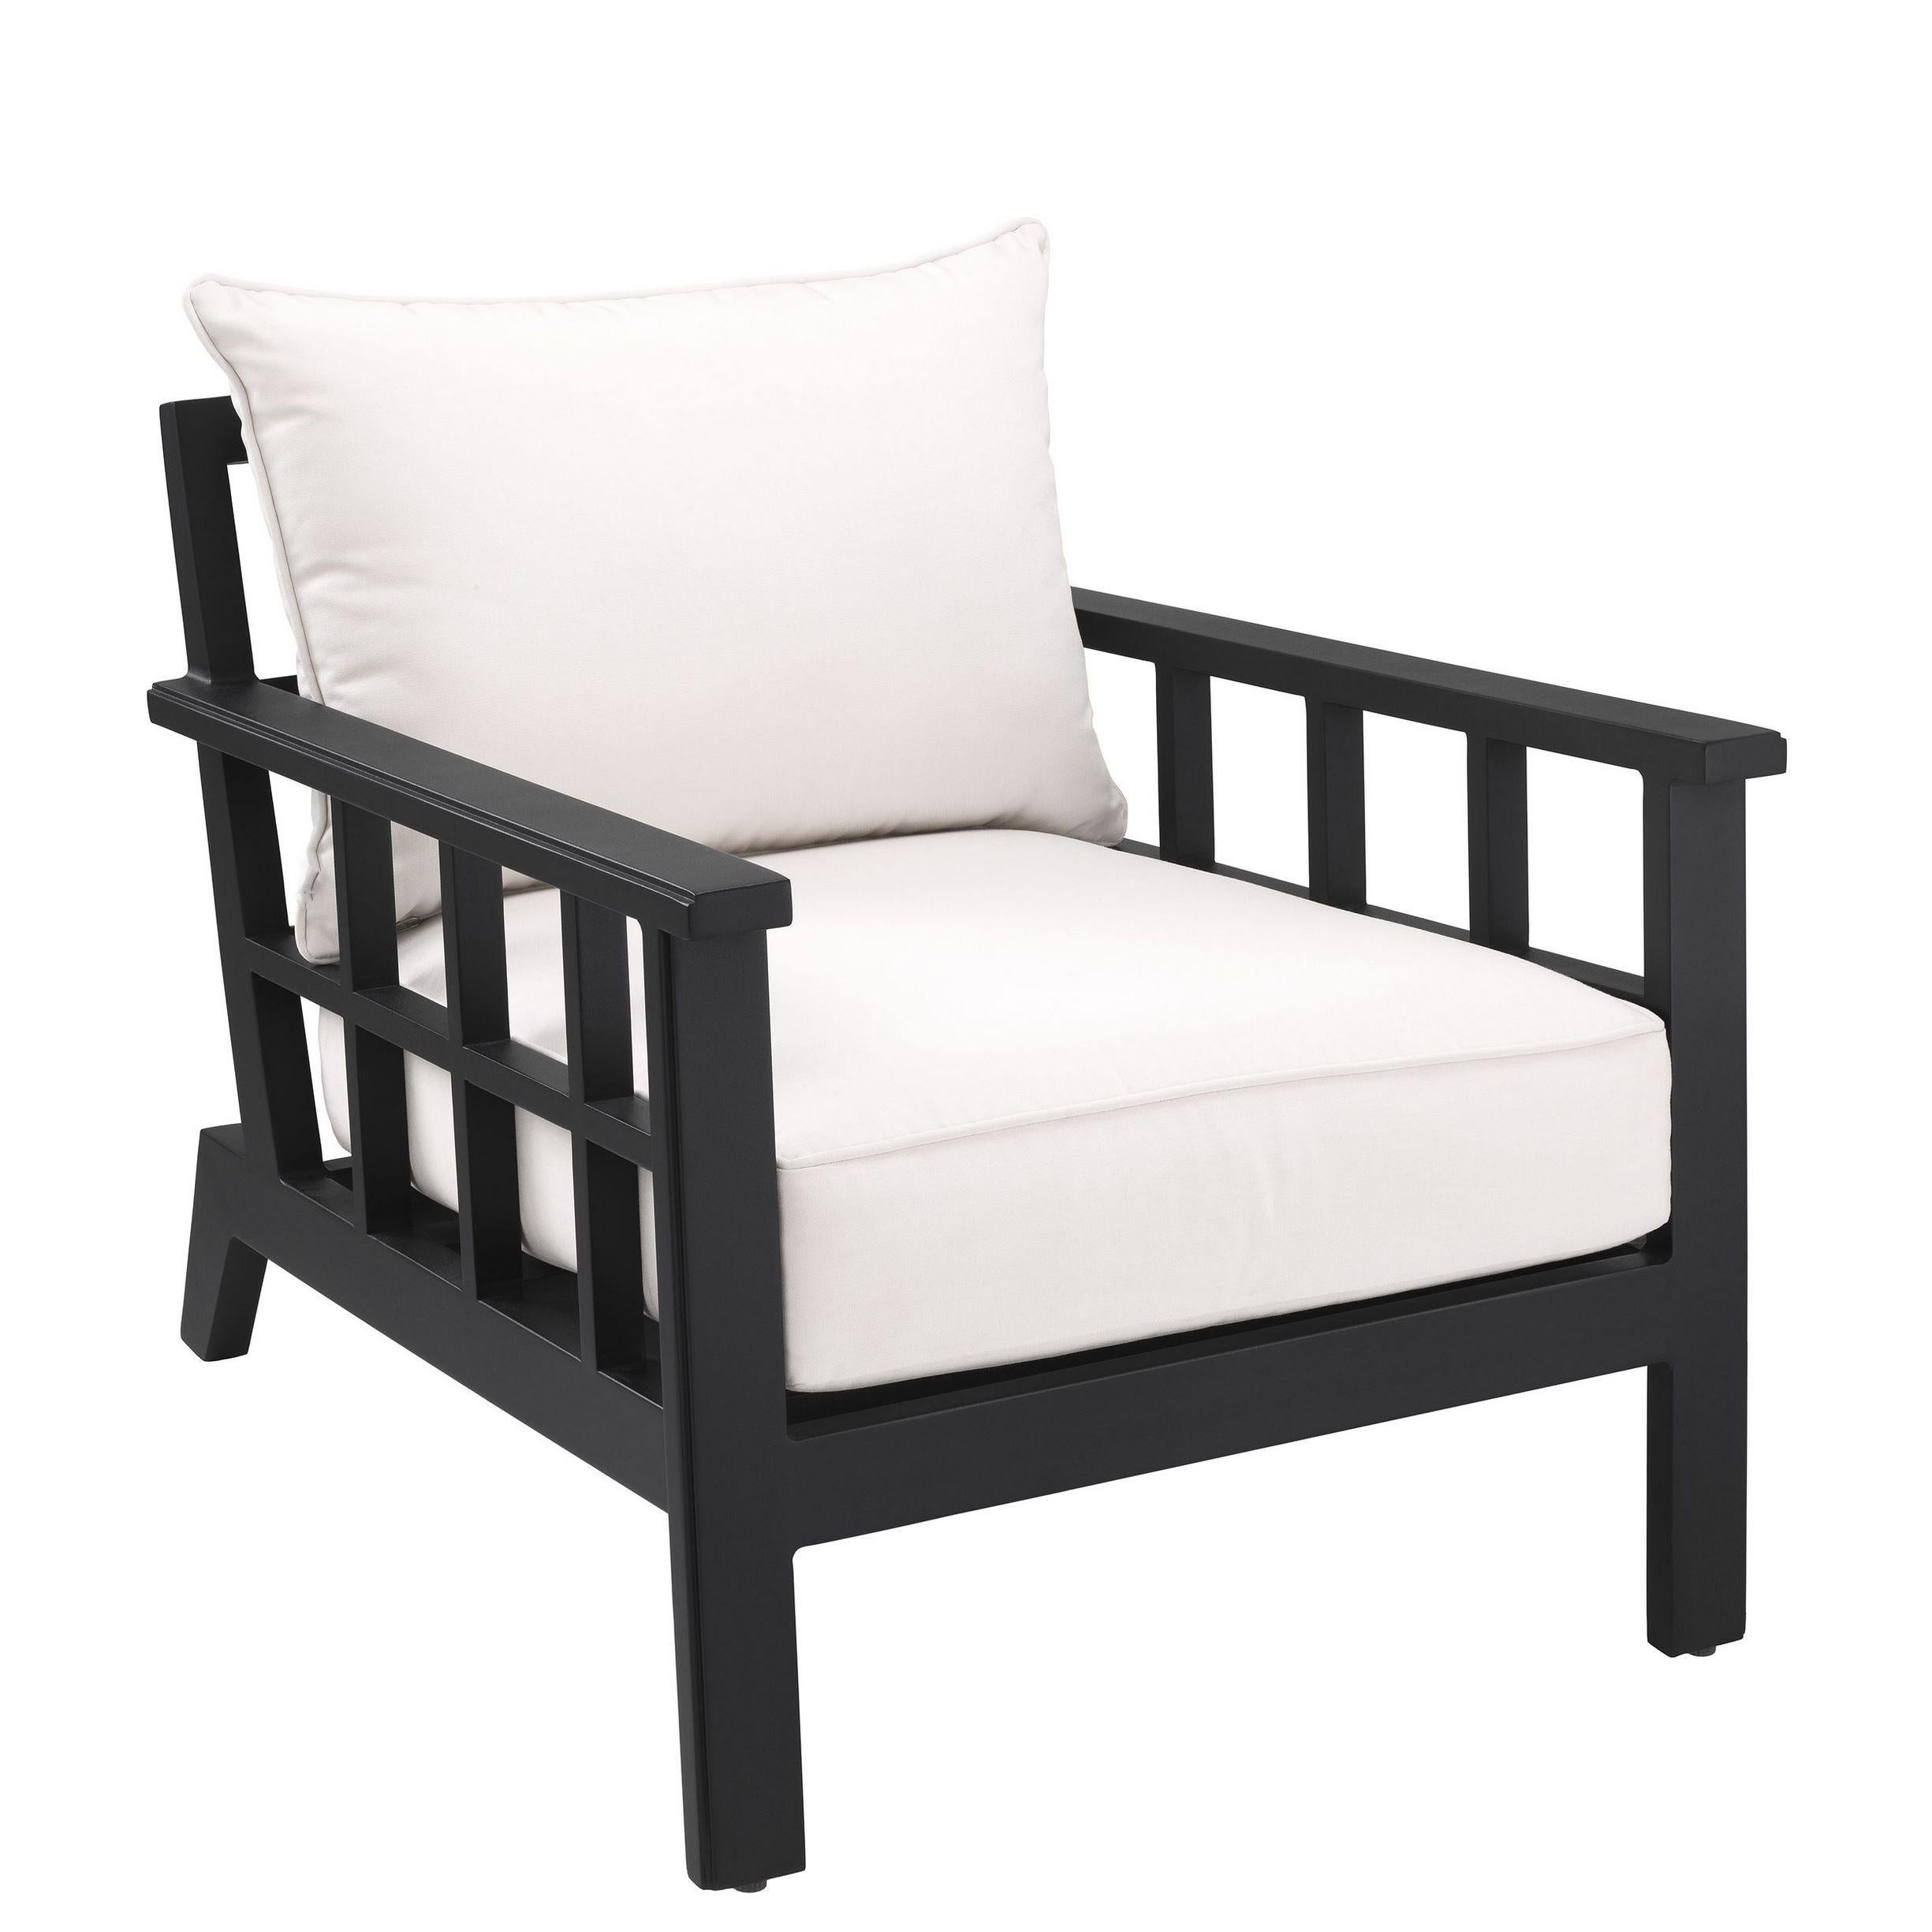 Sessel im französischen Designstil der 1940er Jahre aus schwarz lackiertem Metall und weißem Stoff für den Außenbereich.